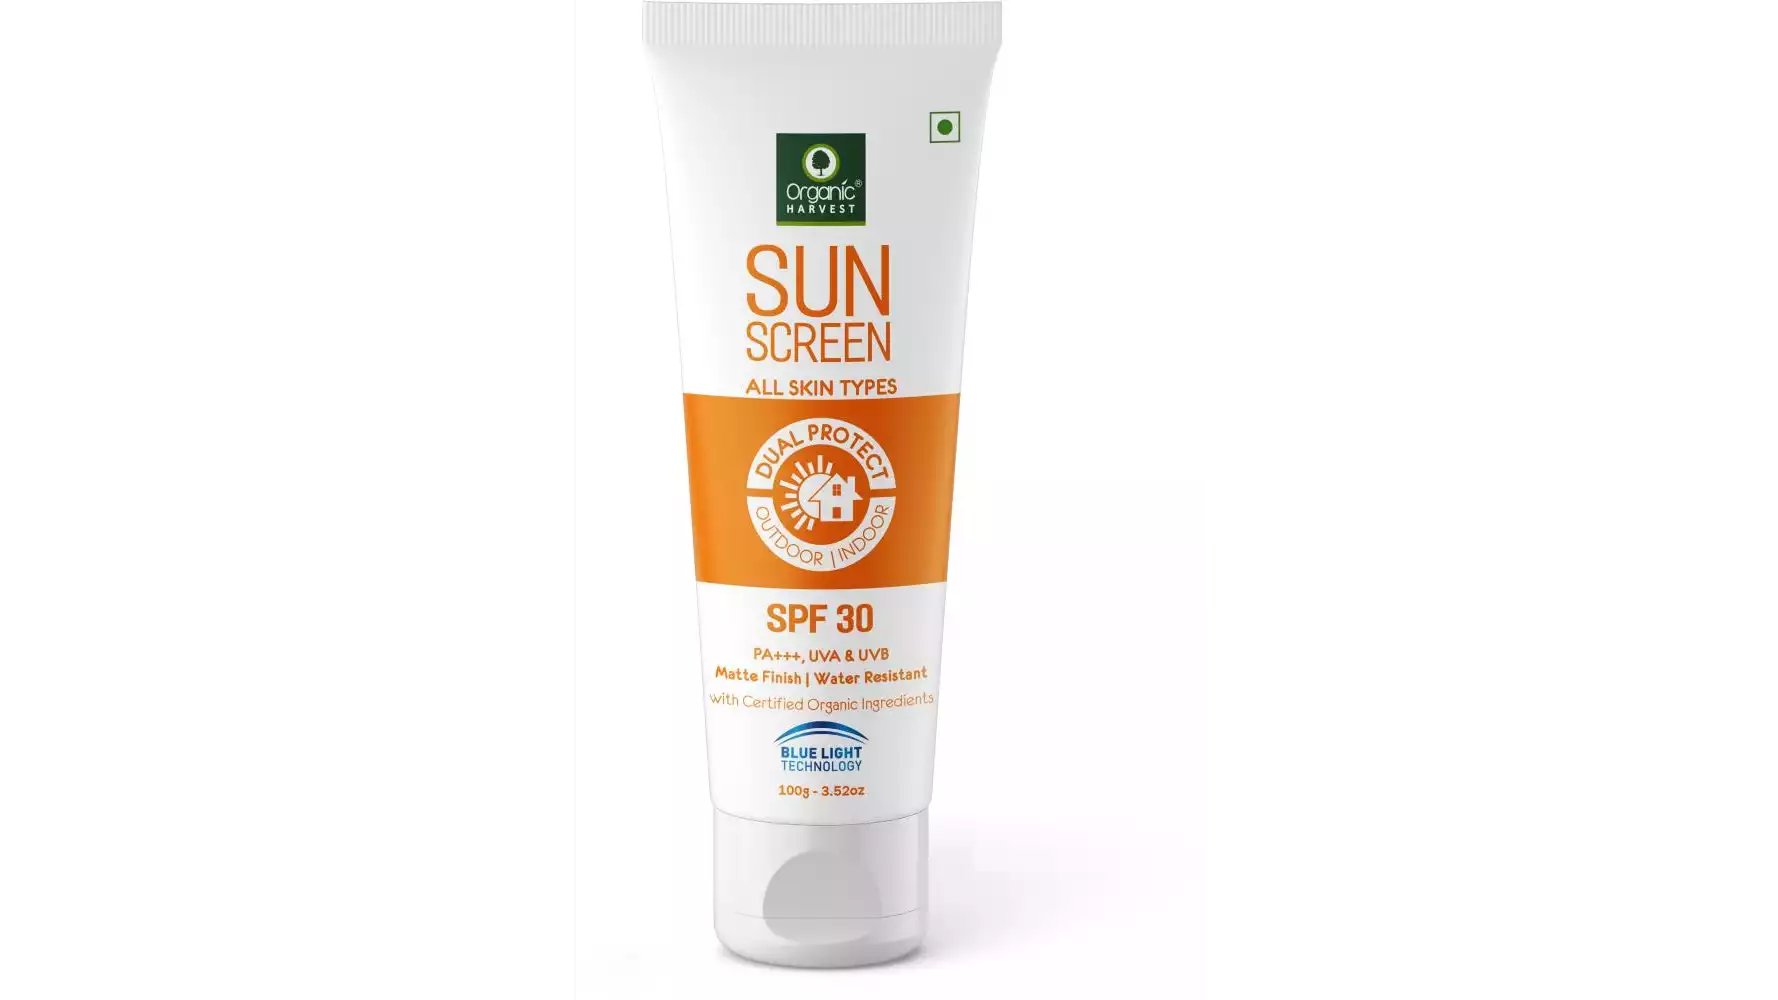 Organic Harvest Sunscreen All Skin Types SPF 30 (100g)